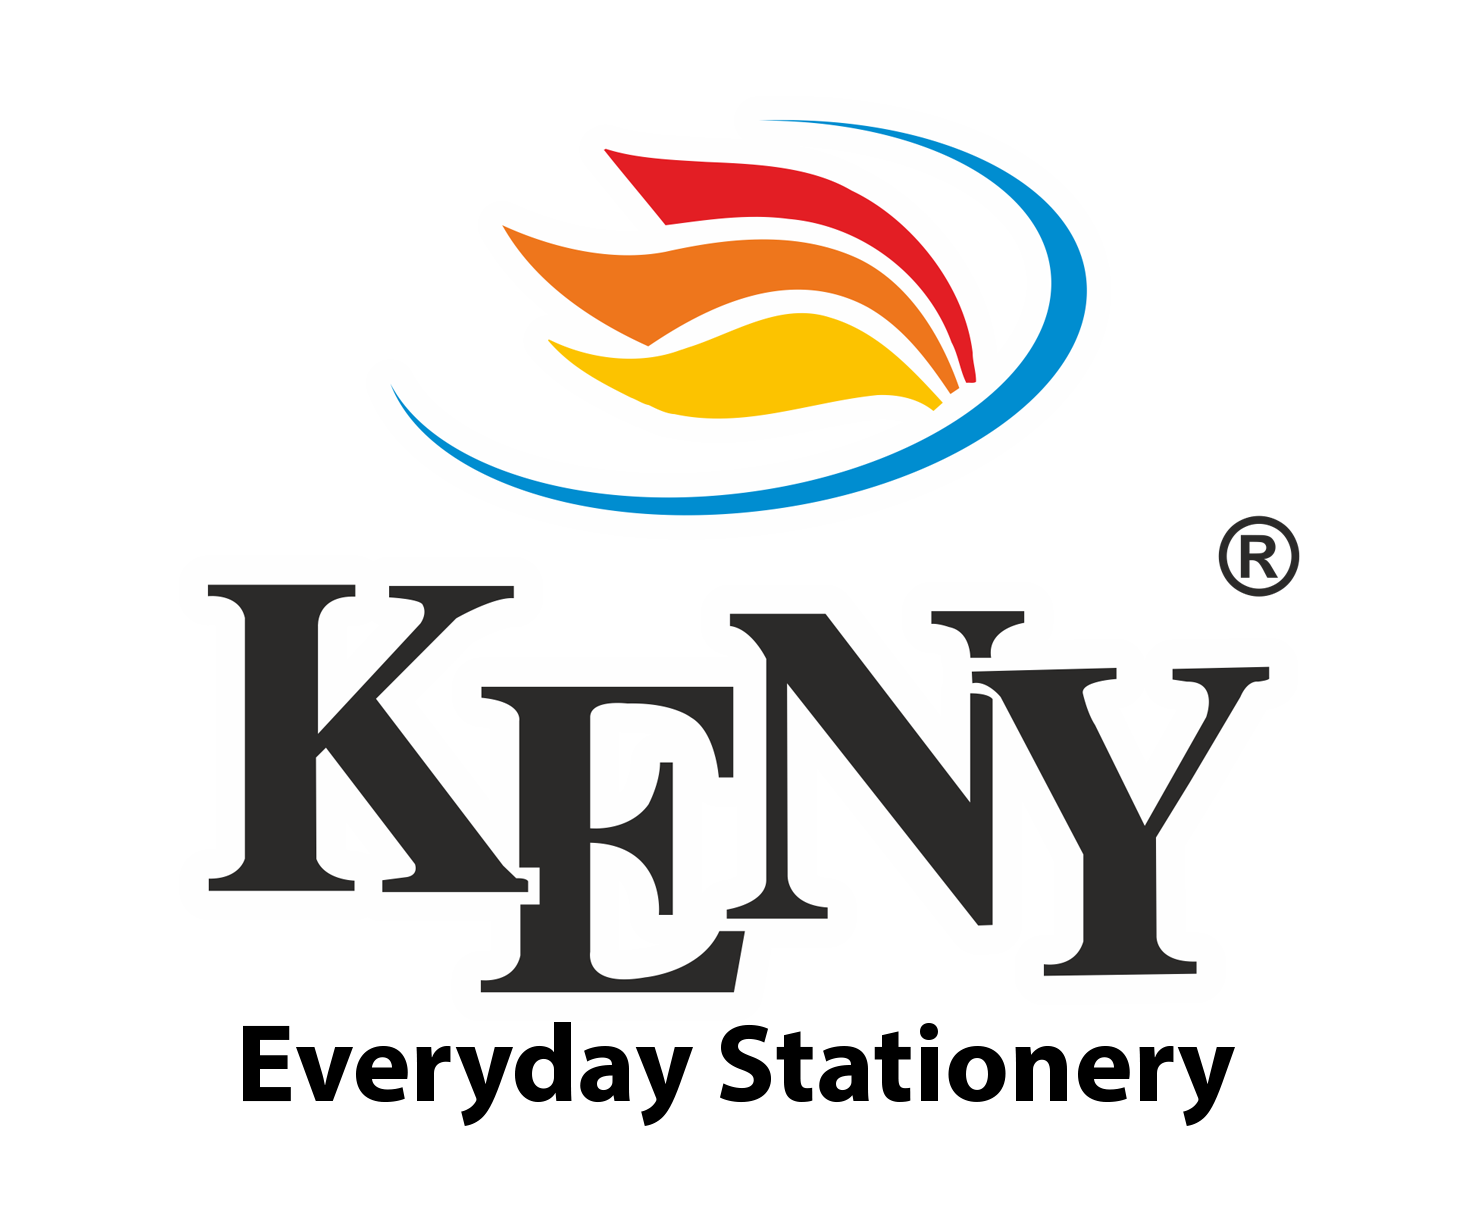 Keny - Everyday Stationery